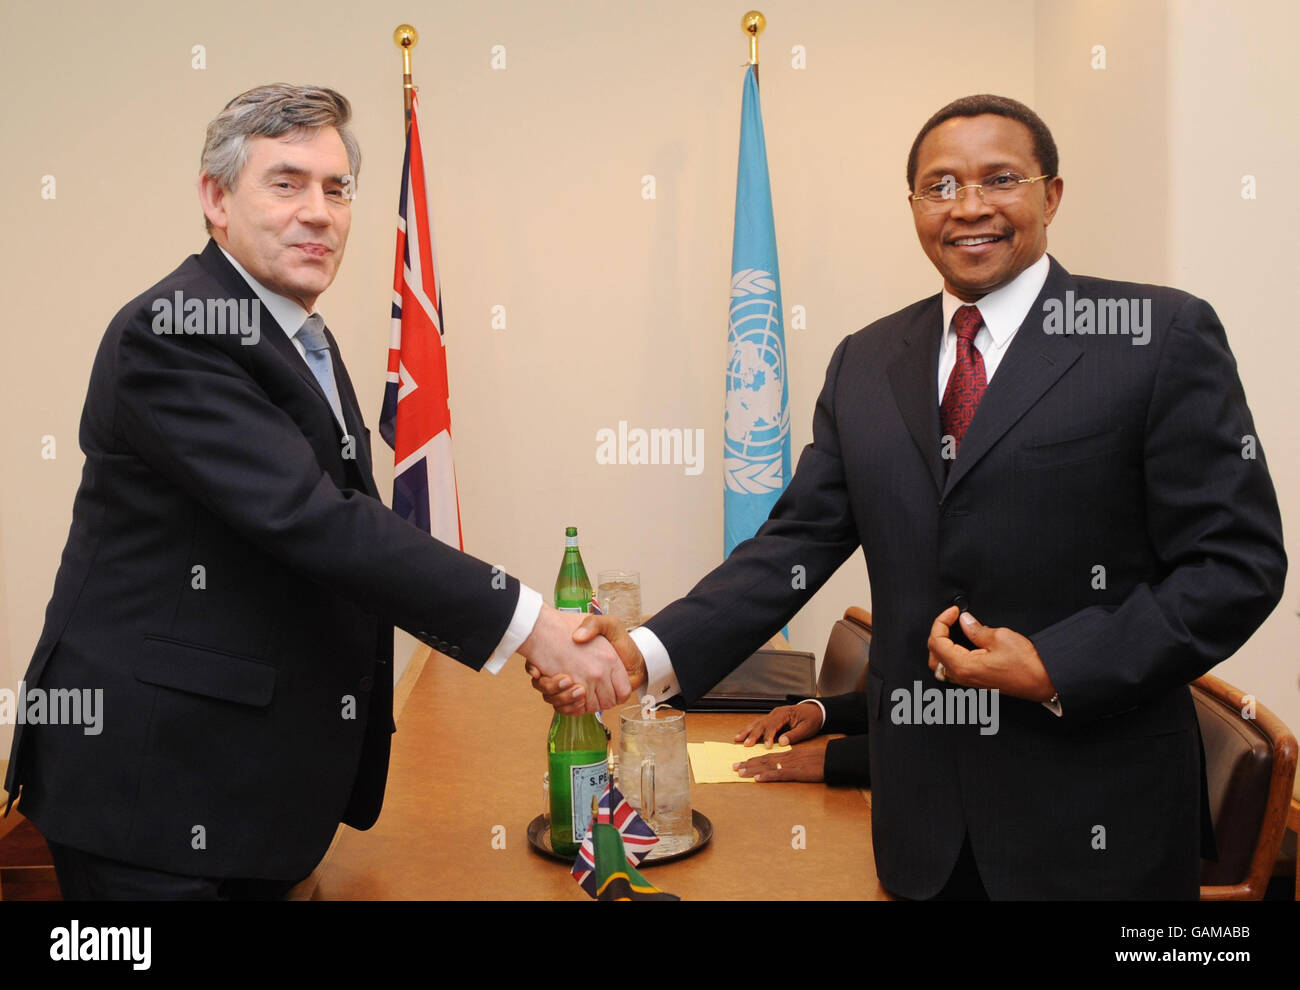 Il primo ministro britannico Gordon Brown incontra oggi il presidente della Tanzania Jakaya Kikwete in un incontro presso la sede centrale delle Nazioni Unite a New York. Foto Stock